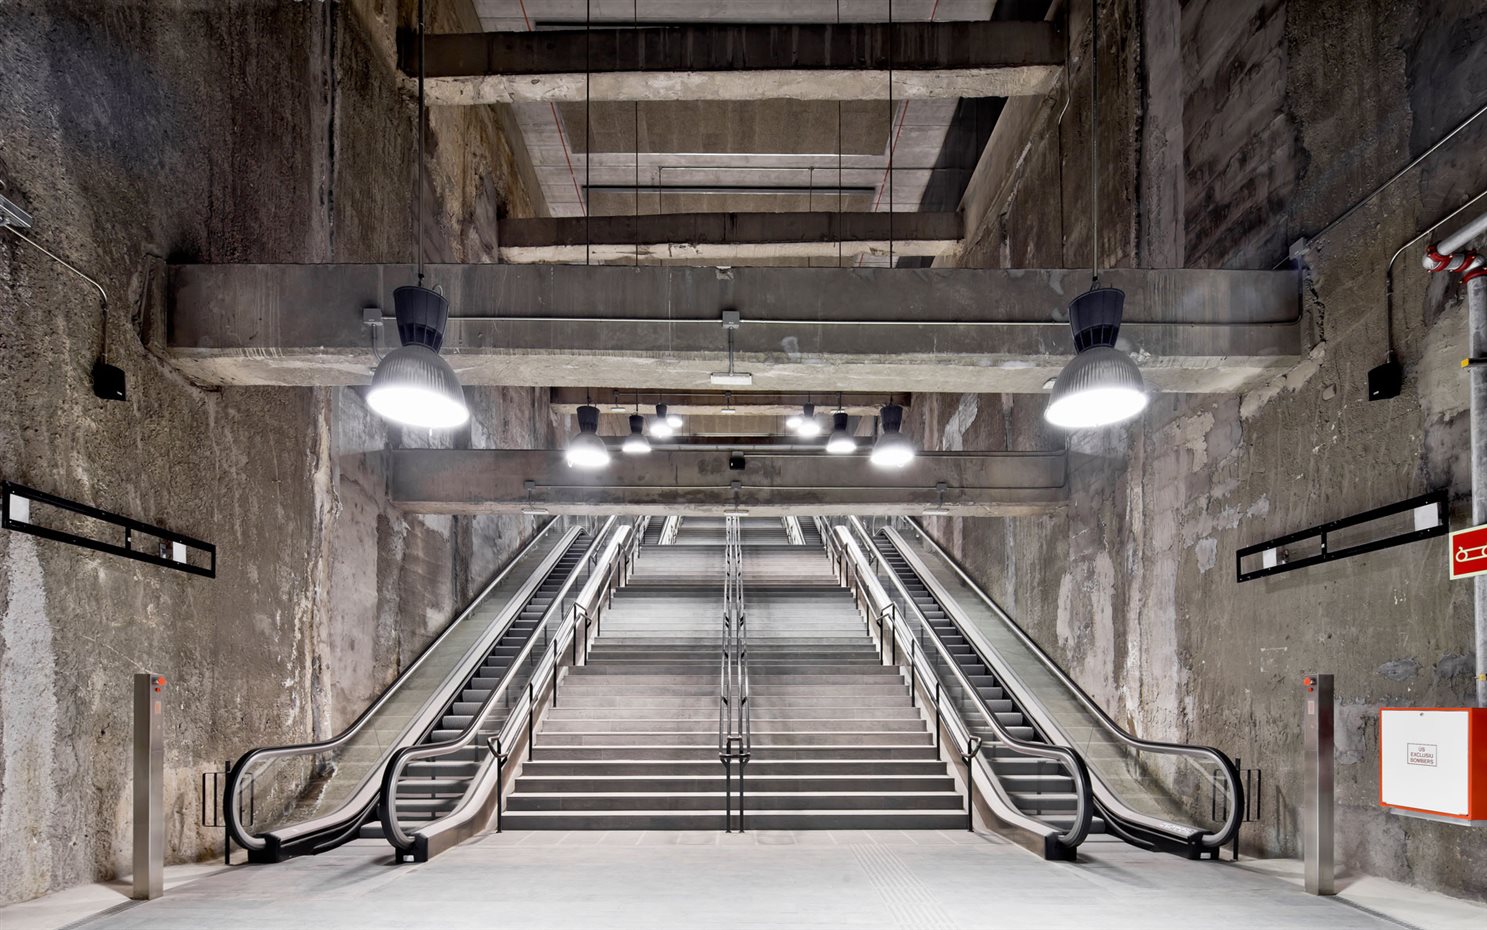 Estaciones de metro de la L9 de Barcelona, de Garcés-de Seta-Bonet Arquitectes